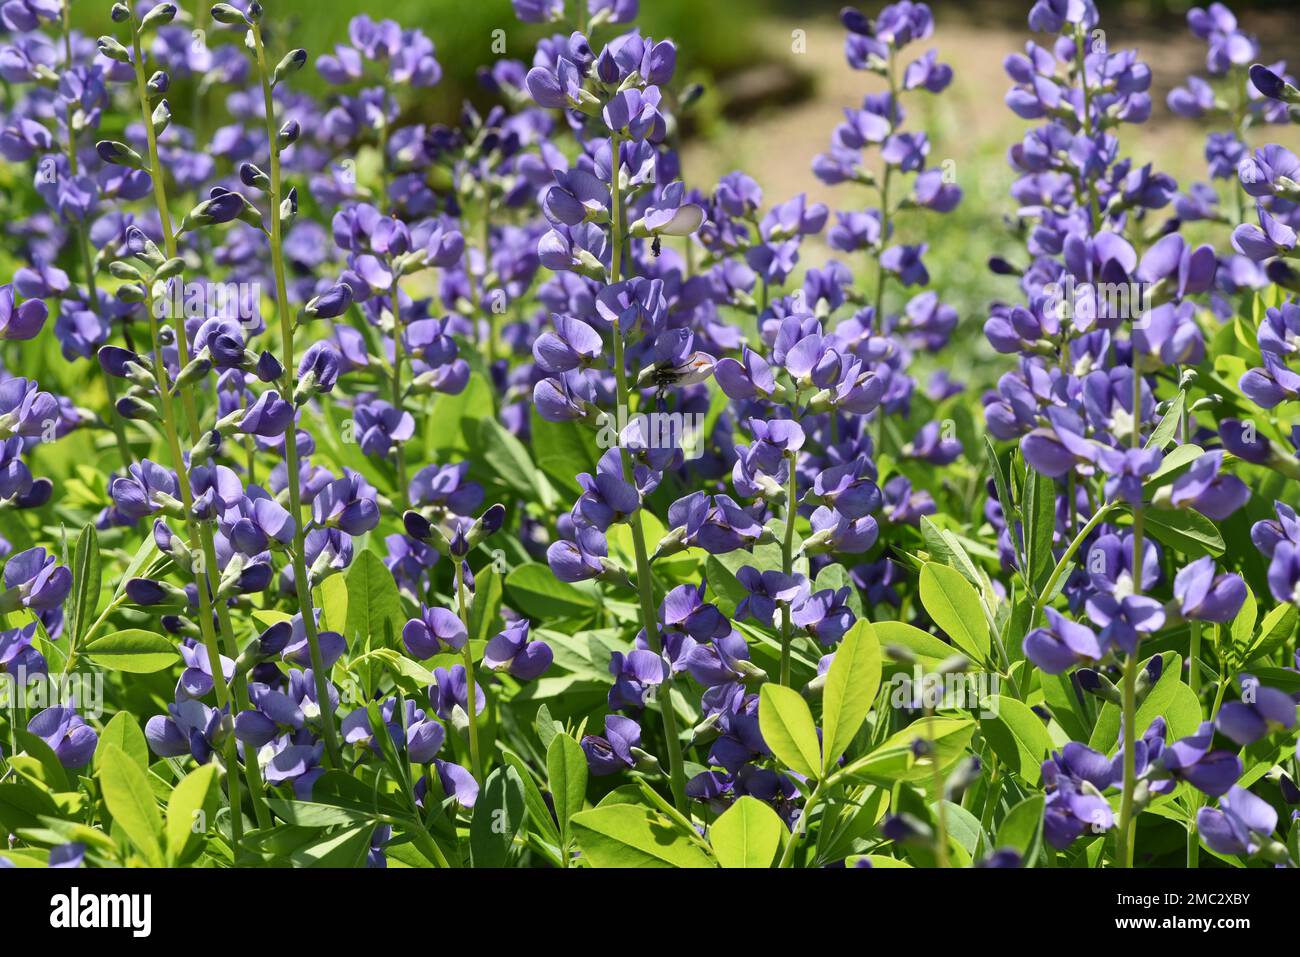 Faerberhuelse, Baptizia tinctoria, ist eine wichtige Heilpflanze mit blauen Blueten und wird viel in der Medizin verwendet. Sie sind eine Staude und ge Stockfoto